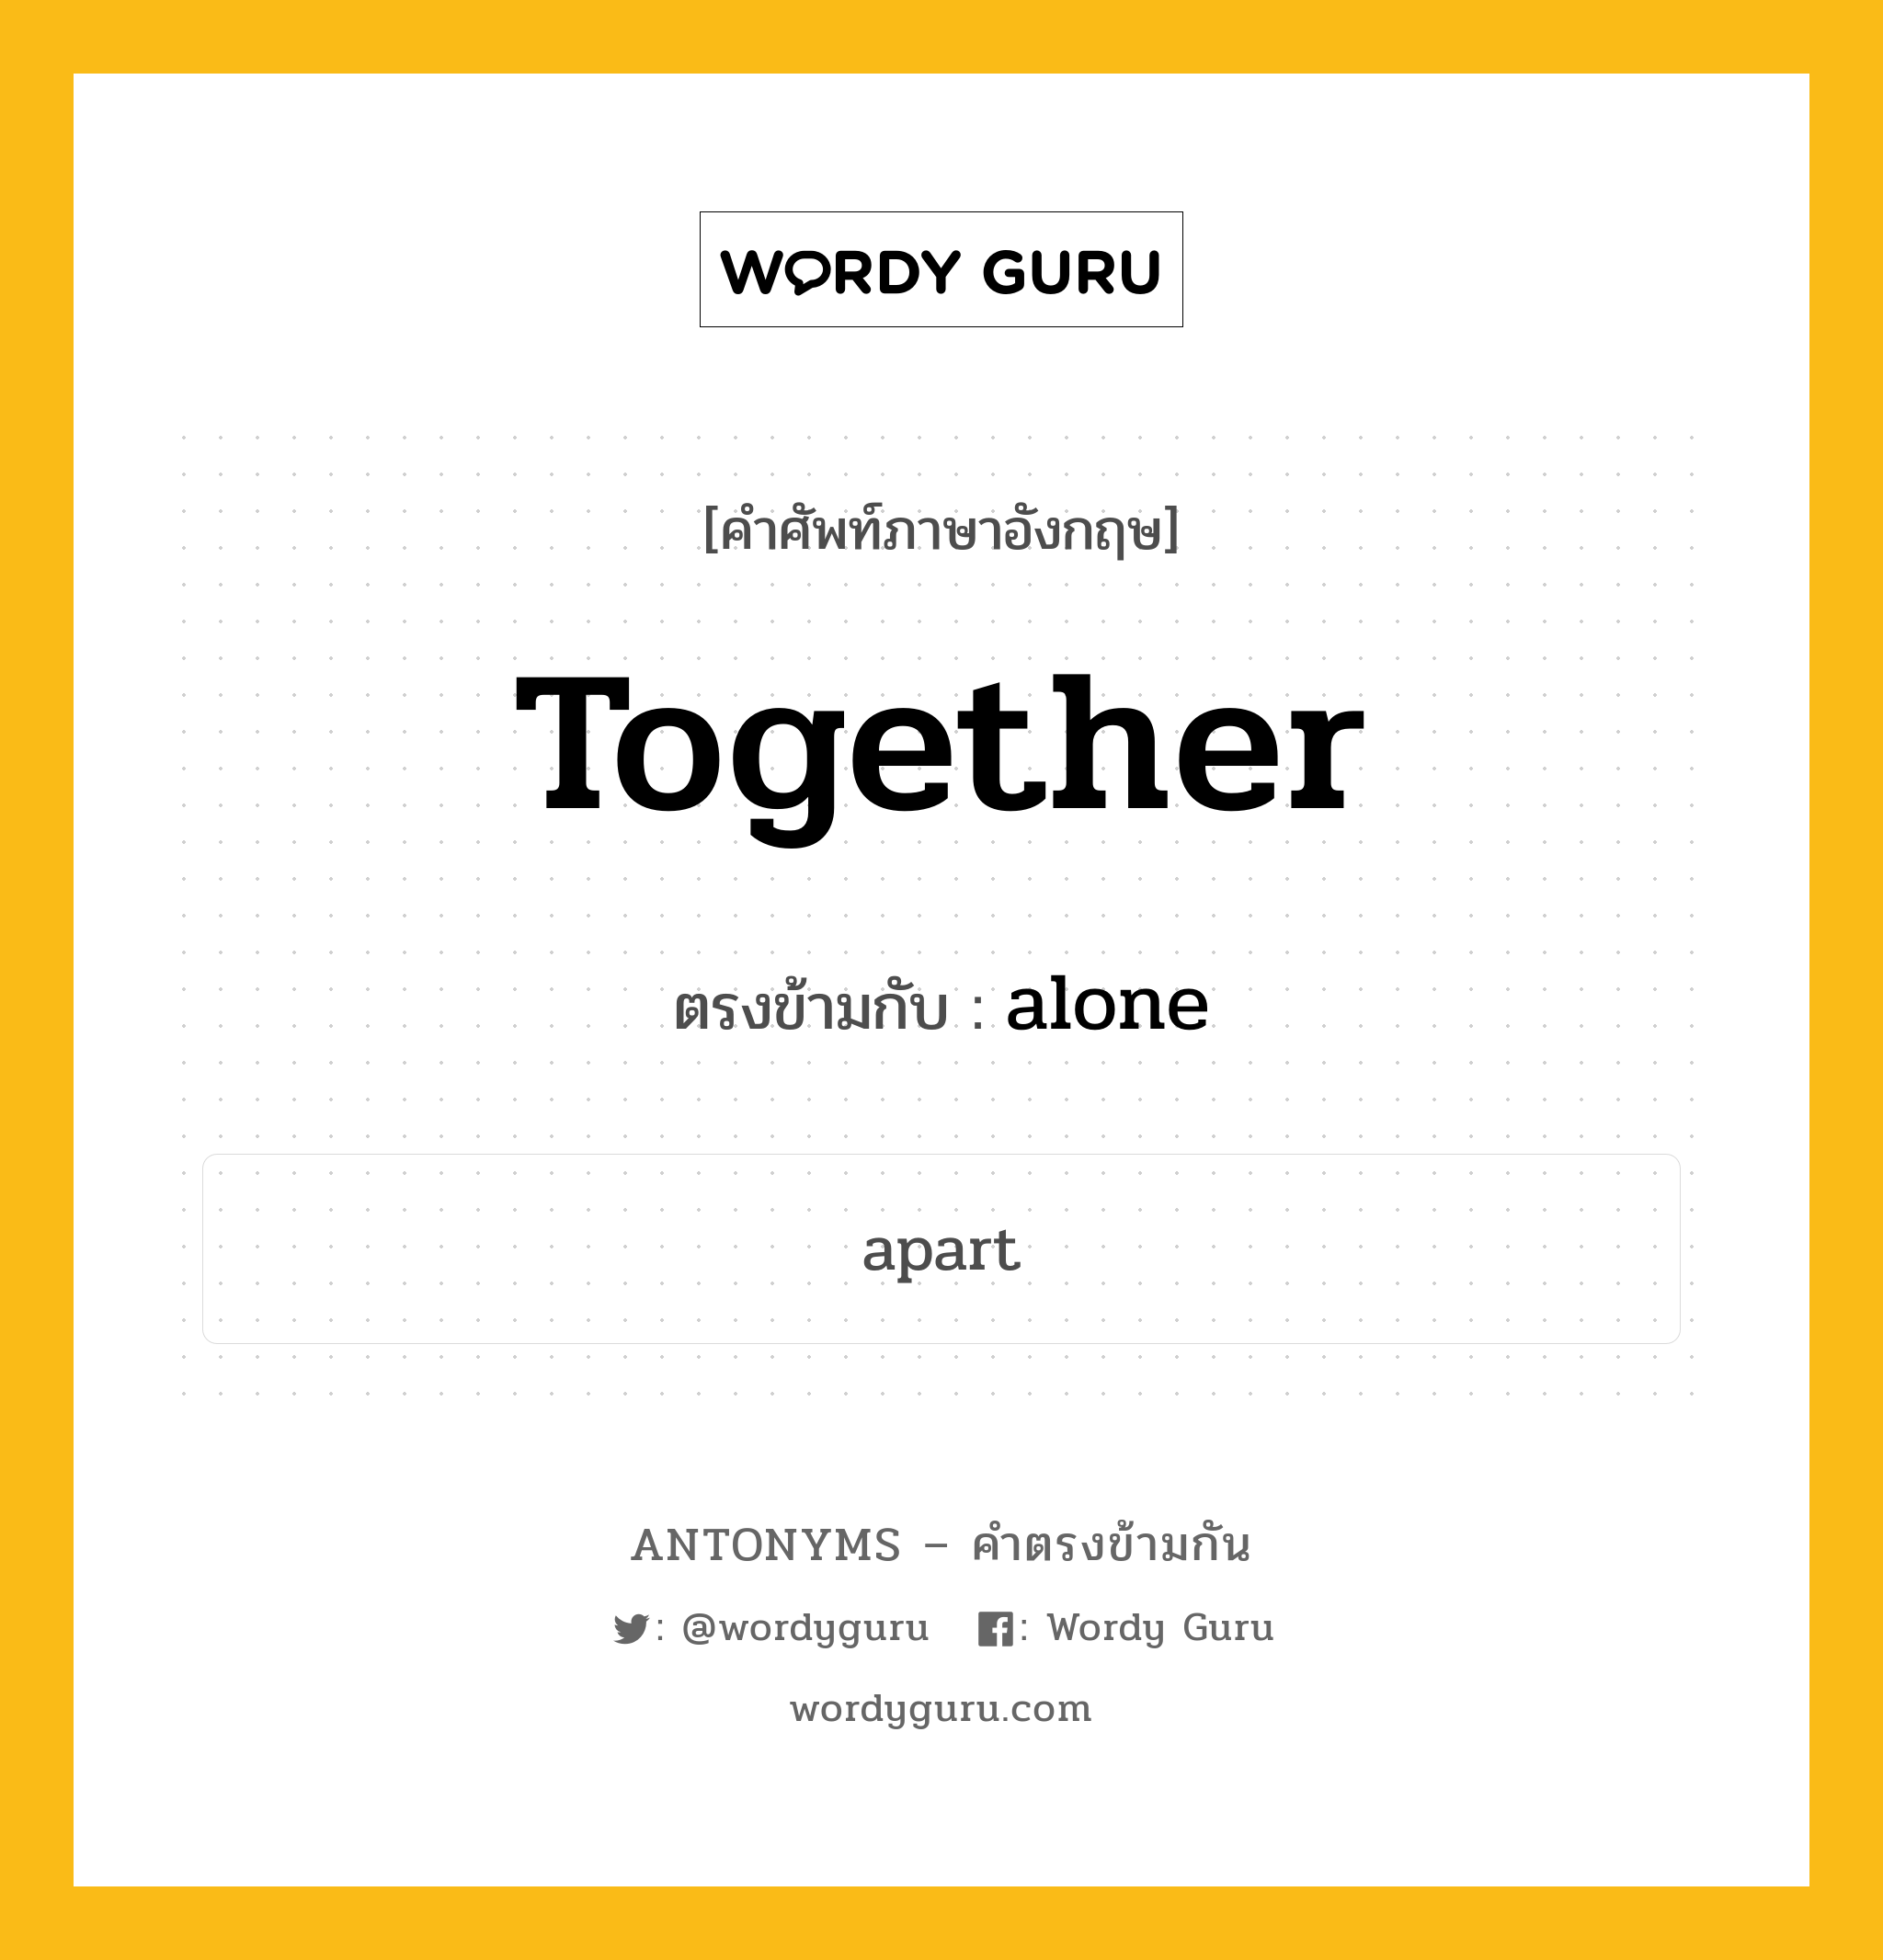 together เป็นคำตรงข้ามกับคำไหนบ้าง?, คำศัพท์ภาษาอังกฤษ together ตรงข้ามกับ alone หมวด alone